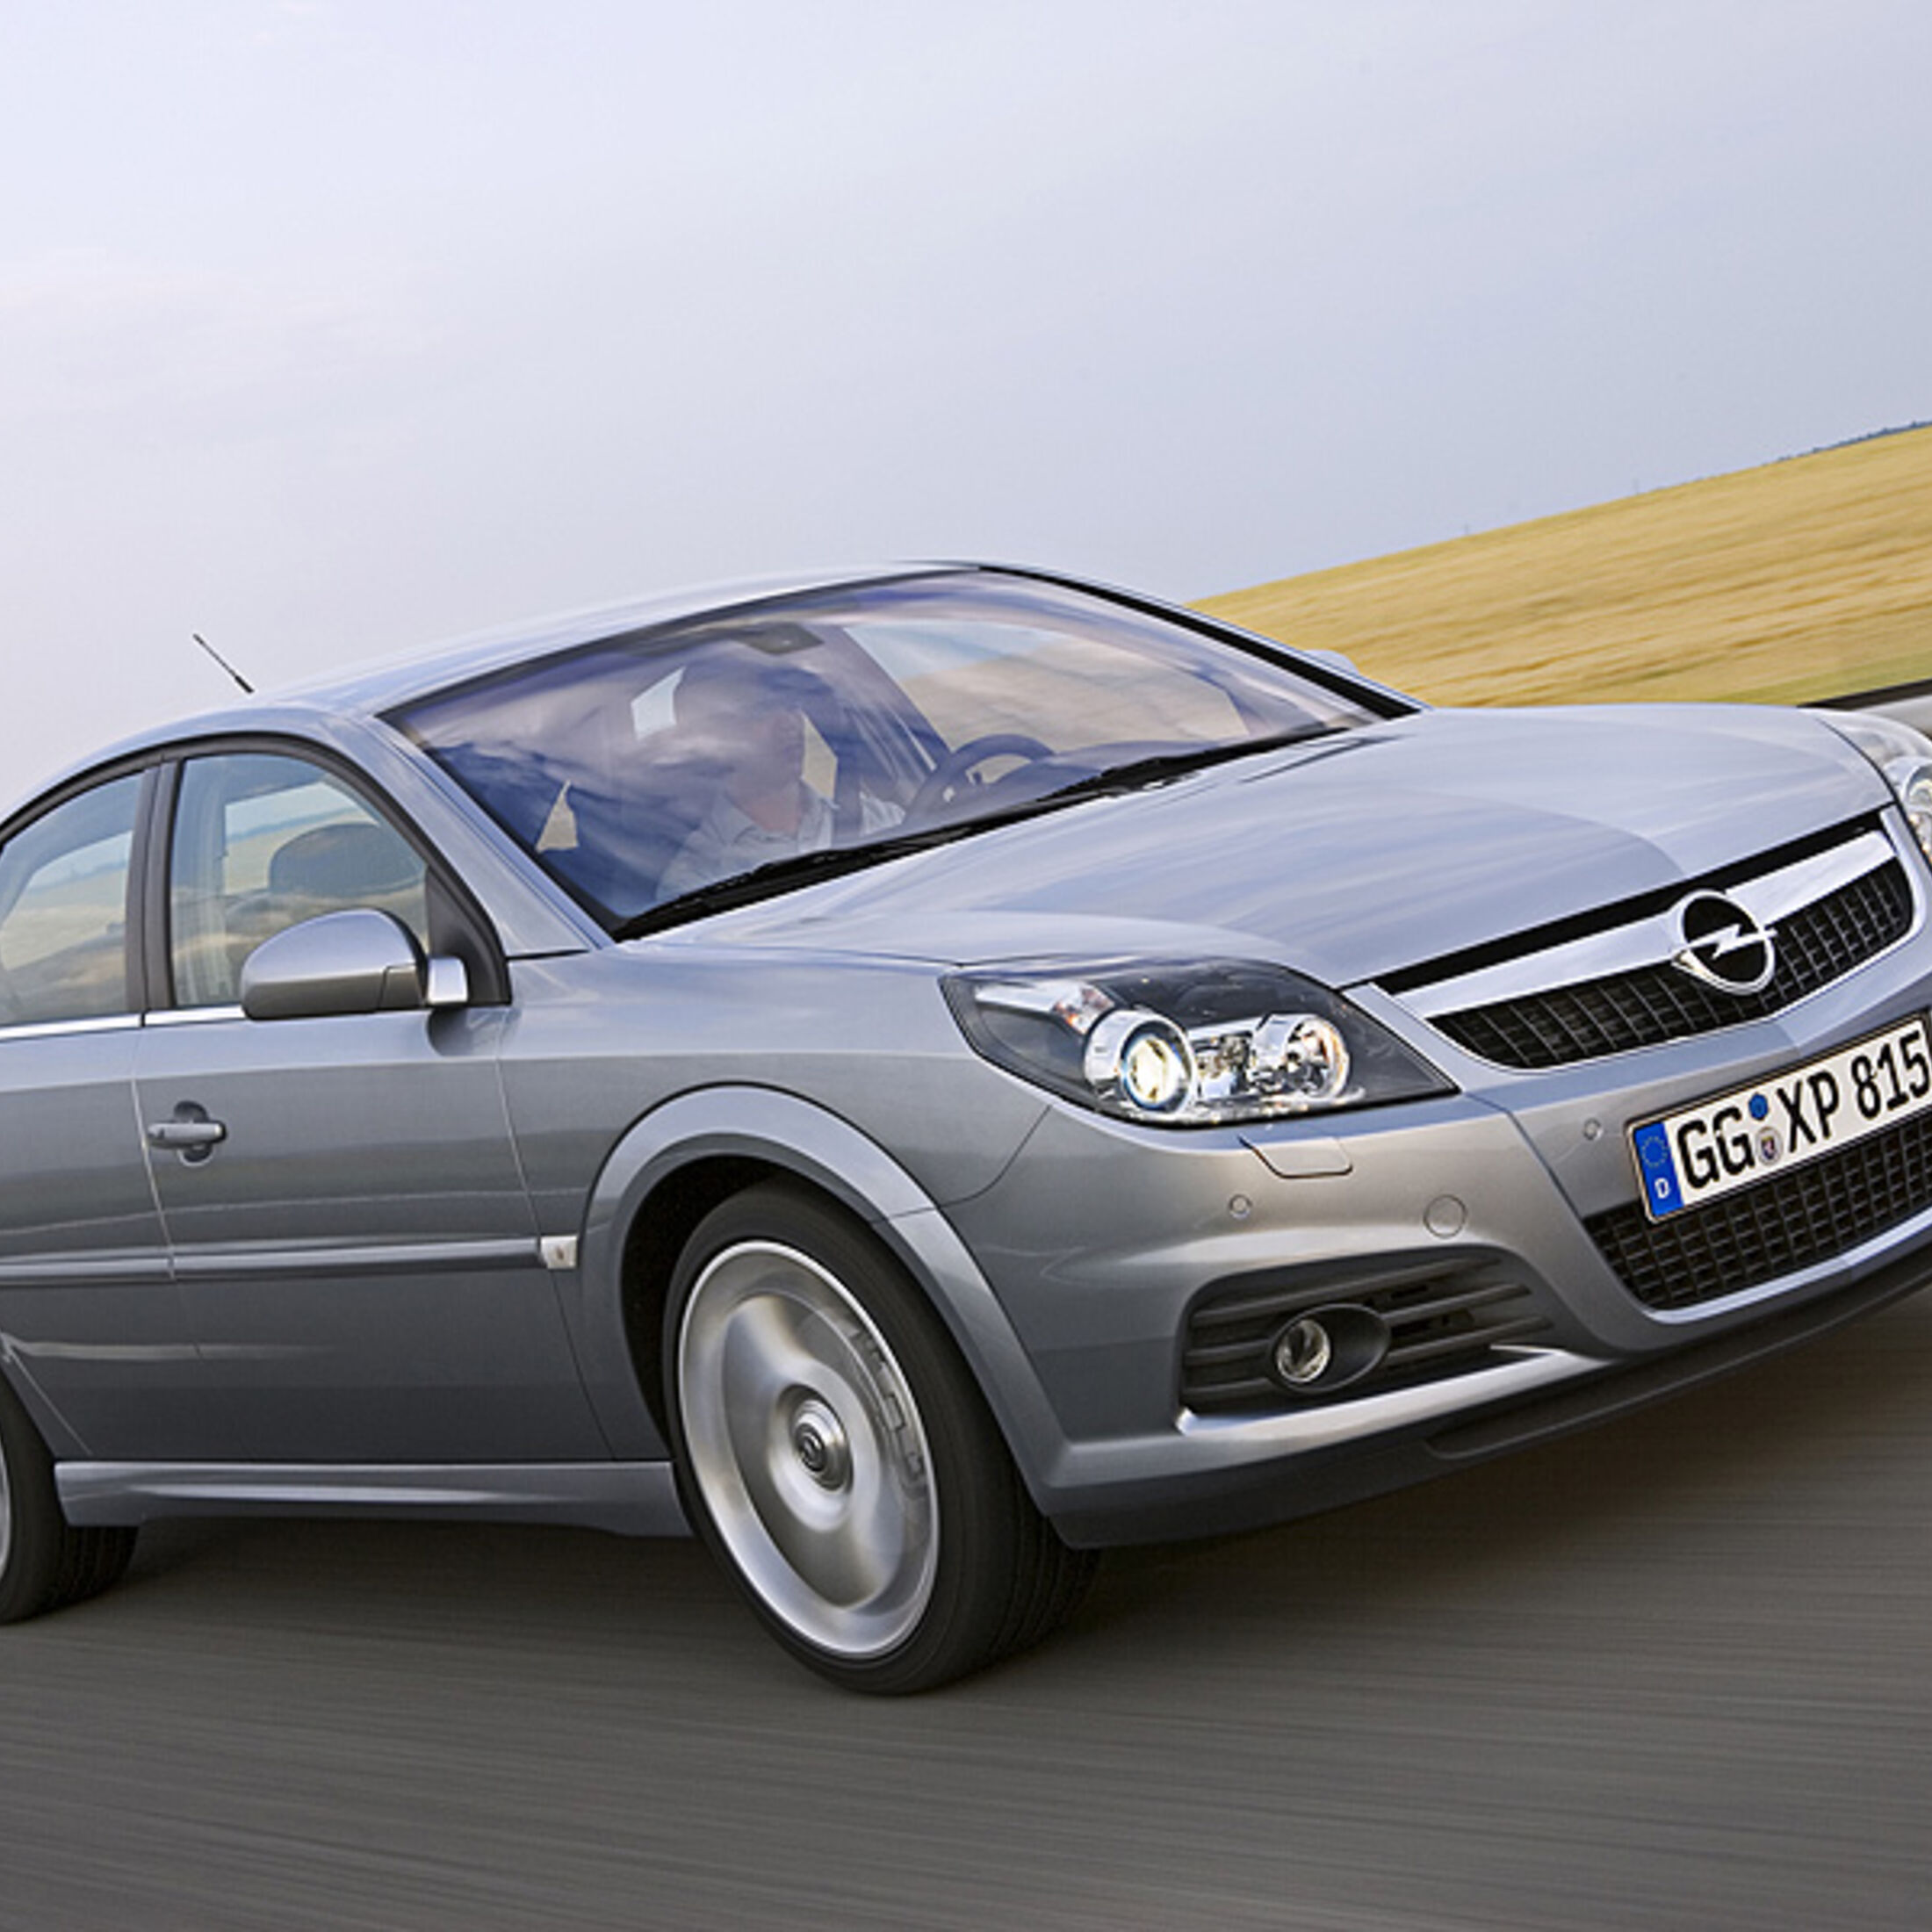 Gebrauchtwagen Opel Vectra im Mängelreport: Geheimtipp für Sparfüchse